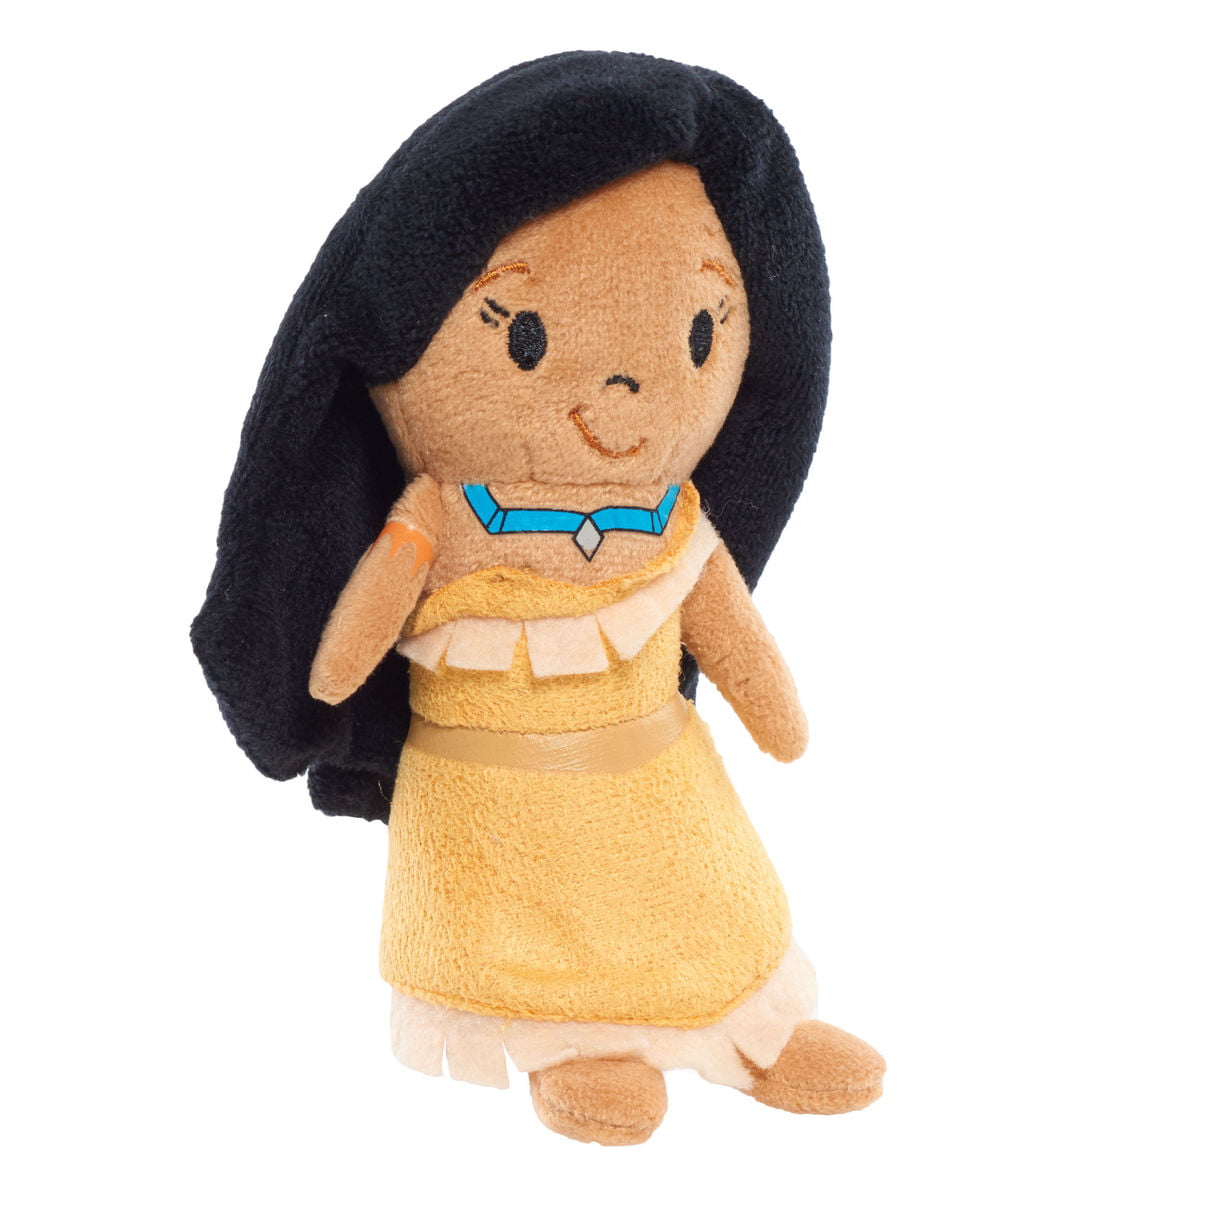 Photo 1 of Disney Princess Stylized Bean Plush, Pocahontas